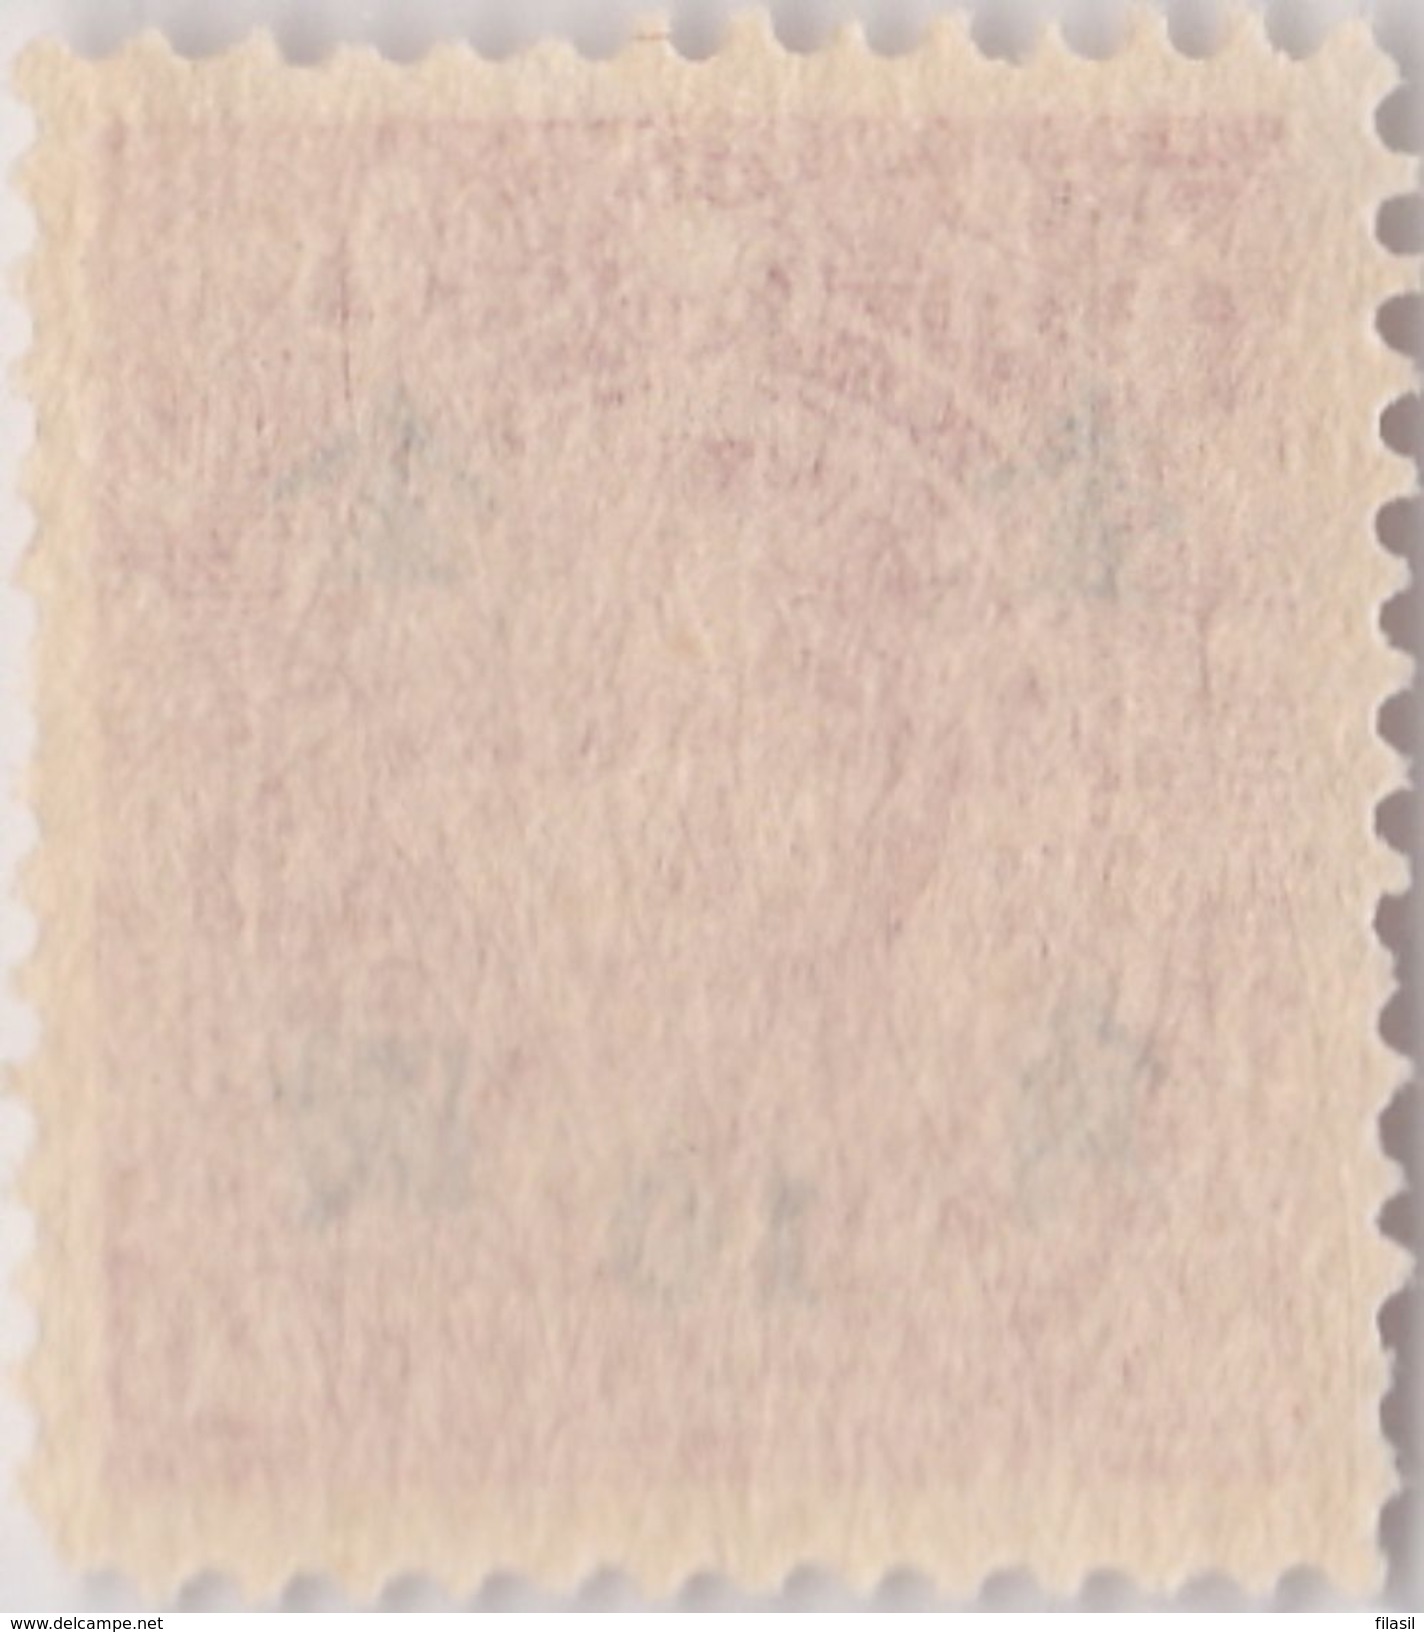 SI53D Cina China Chine 10/40 Rare Fine  Yuan China Stamp  Surcharge NO Gum - 1912-1949 République